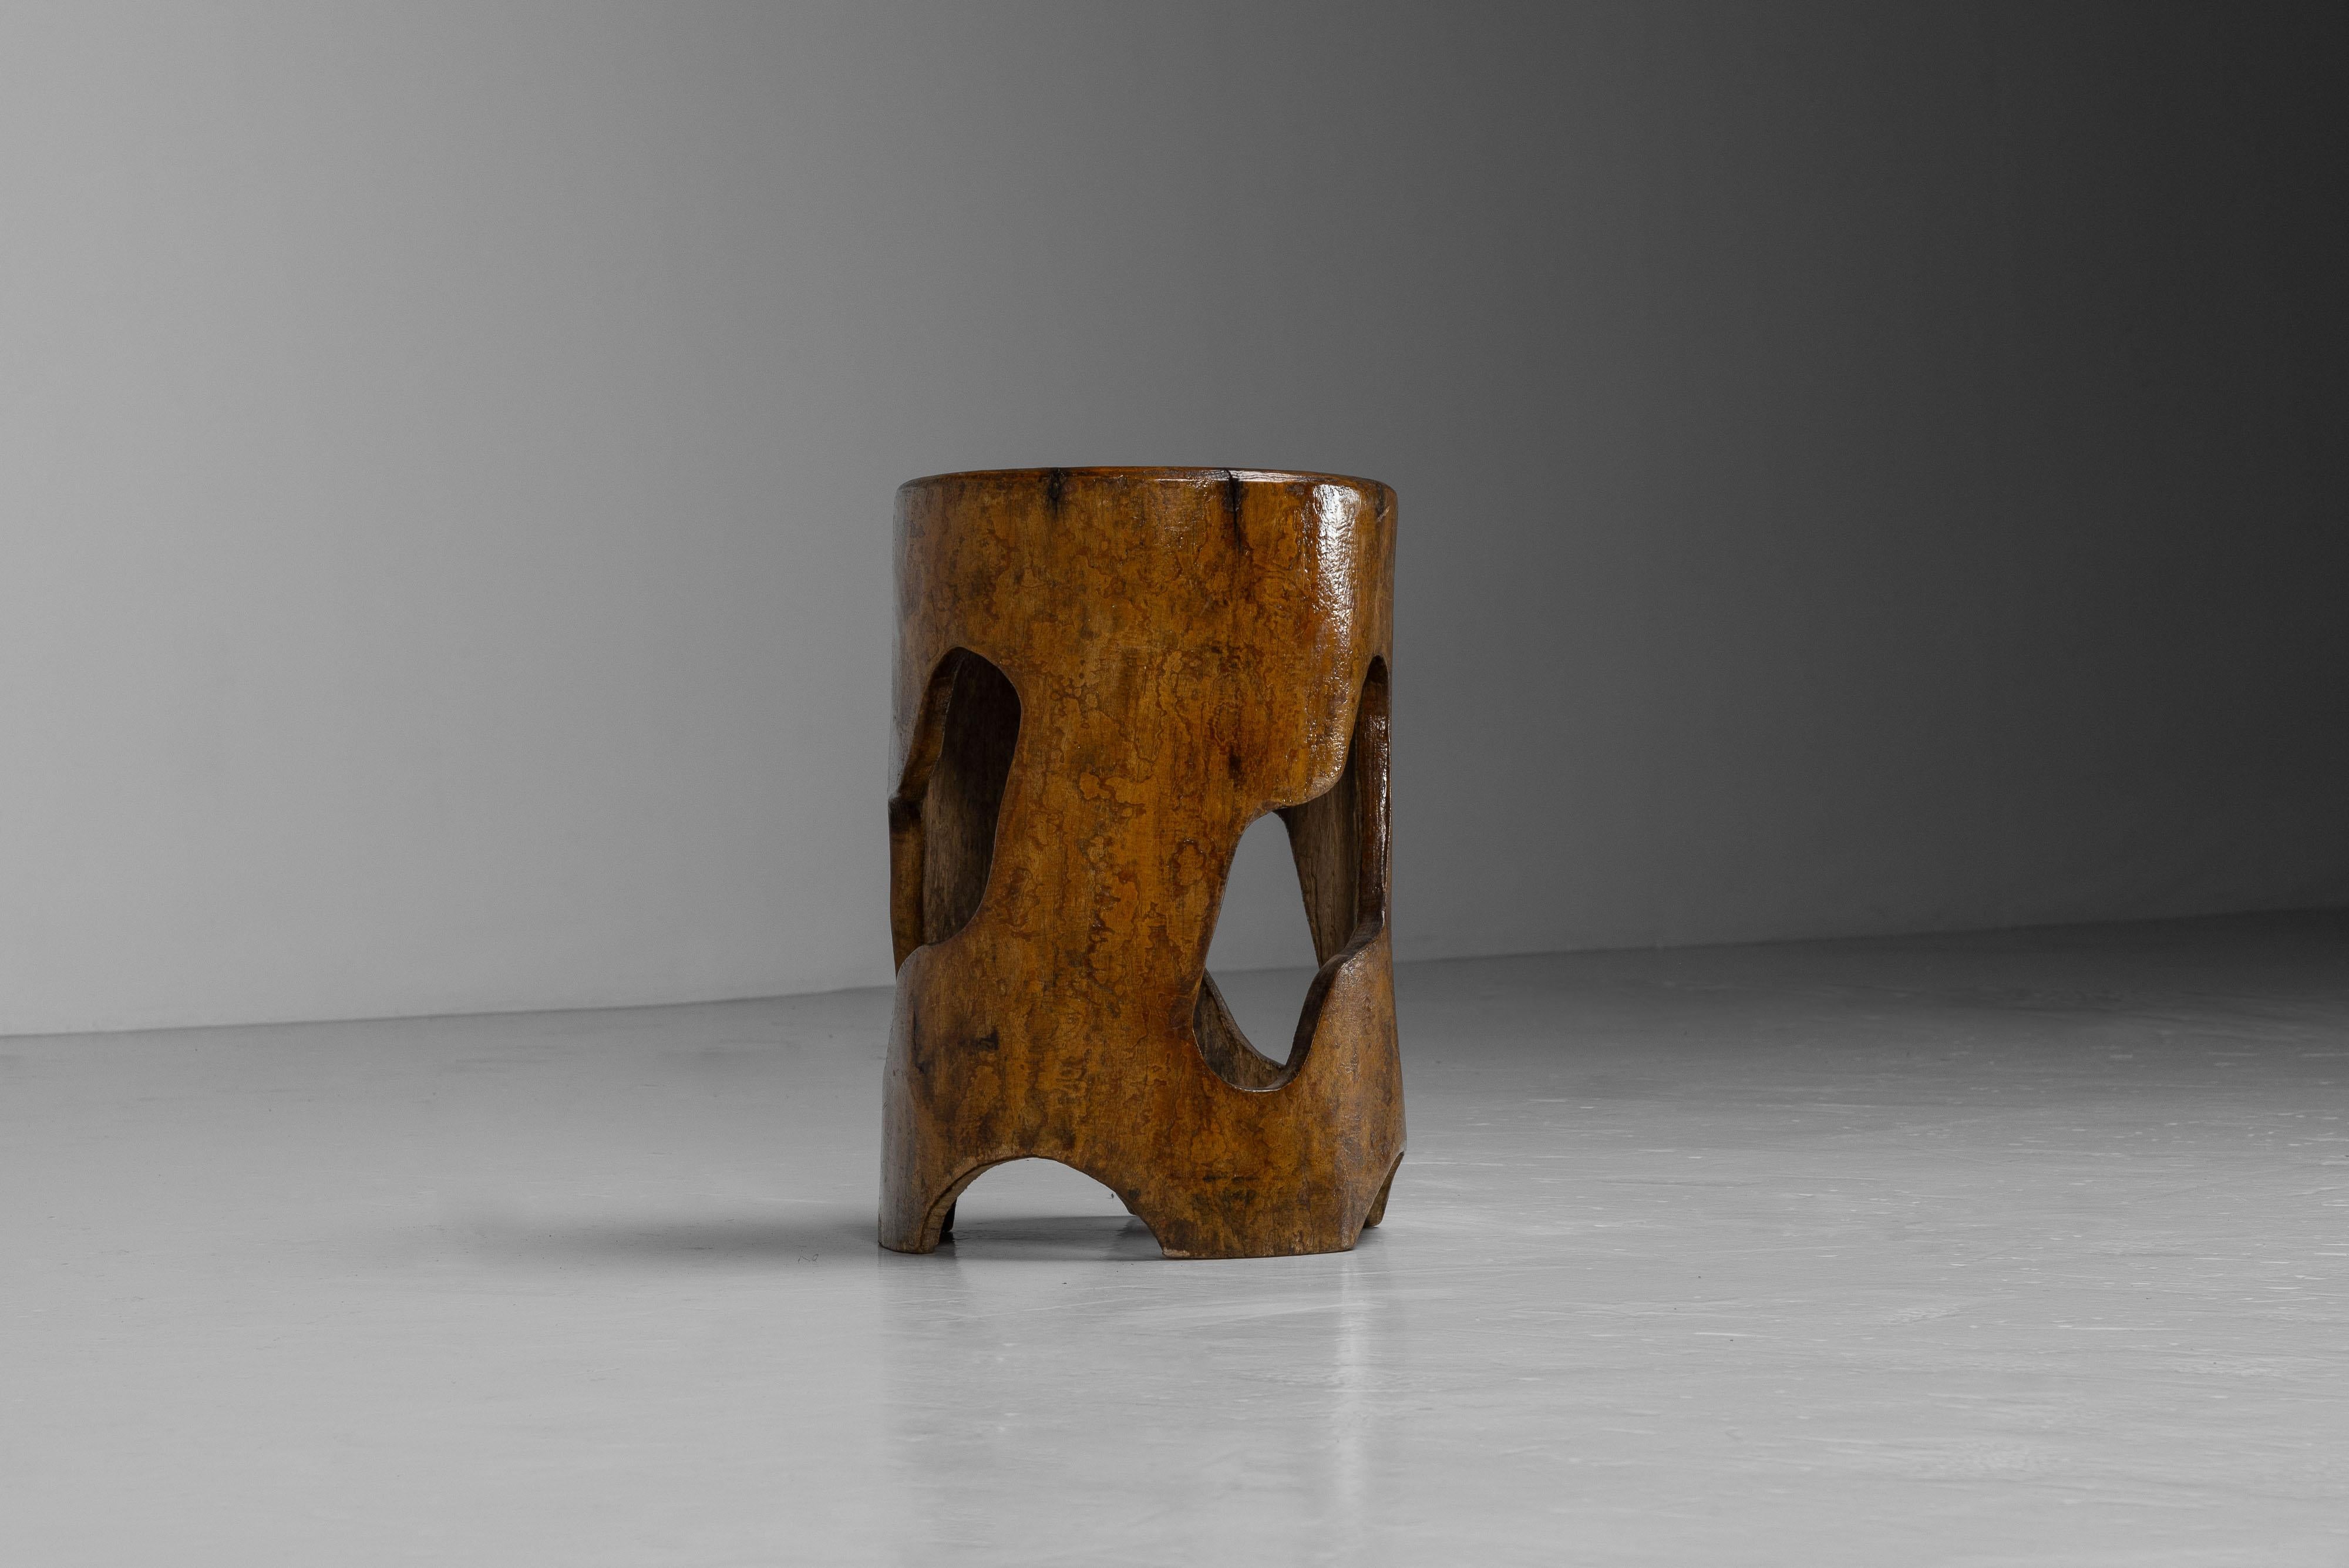 Tabouret fait d'un tronc creux conçu par José Zanine Caldas, fabriqué dans son propre atelier à Nova Vicosa, Brésil 1979. Fabriqué à partir d'un tronc en bois dur massif avec une patine d'origine étonnante. Finition en laque transparente. Il peut